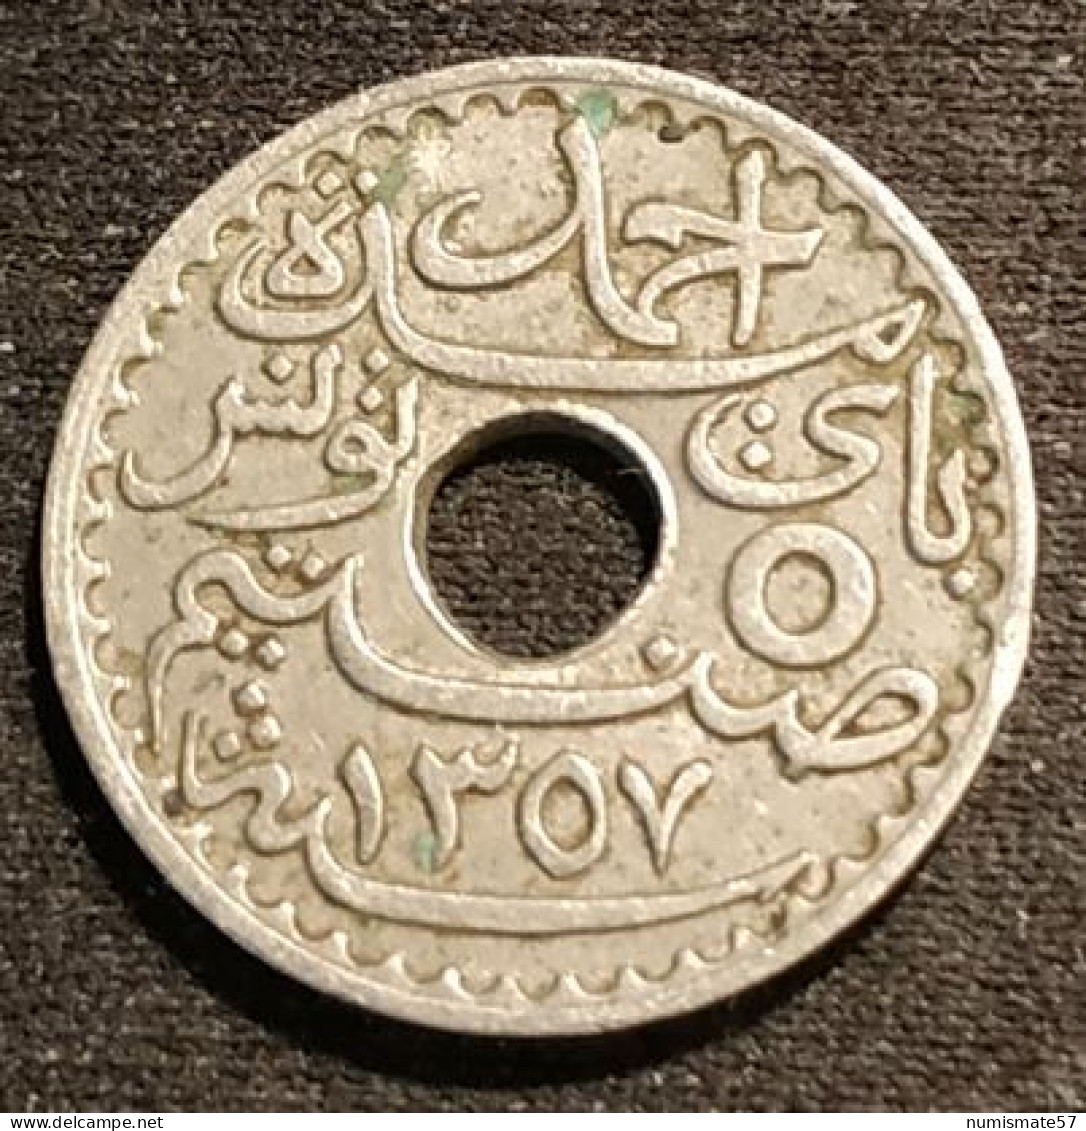 TUNISIE - TUNISIA - 5 CENTIMES 1938 ( 1357 ) - Ahmad Pasha - Protectorat Français - KM 258 - Tunisie